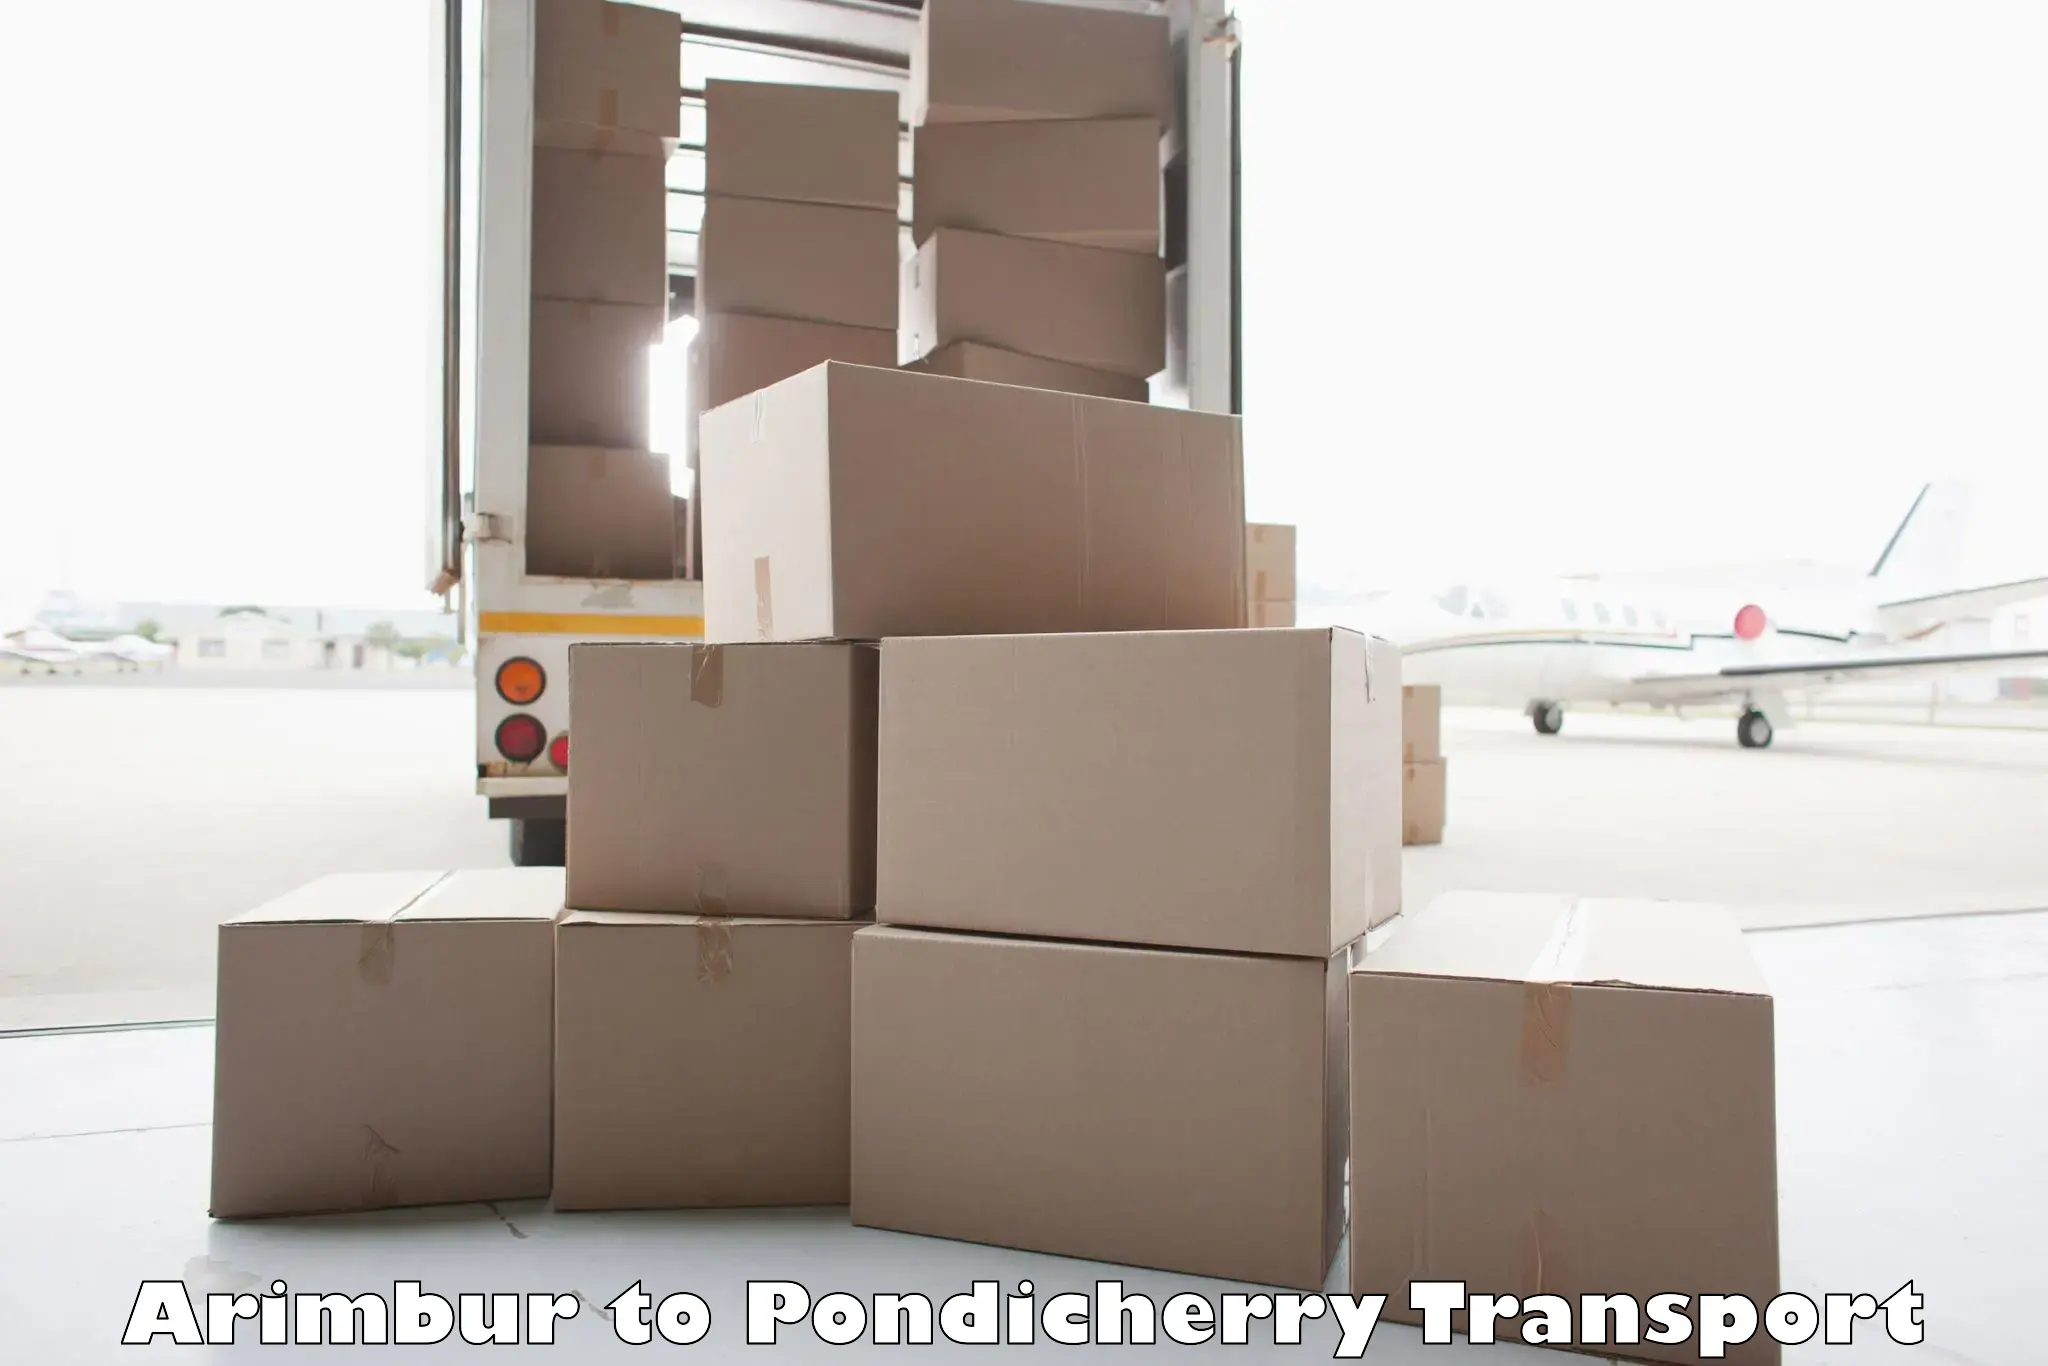 Container transport service Arimbur to Pondicherry